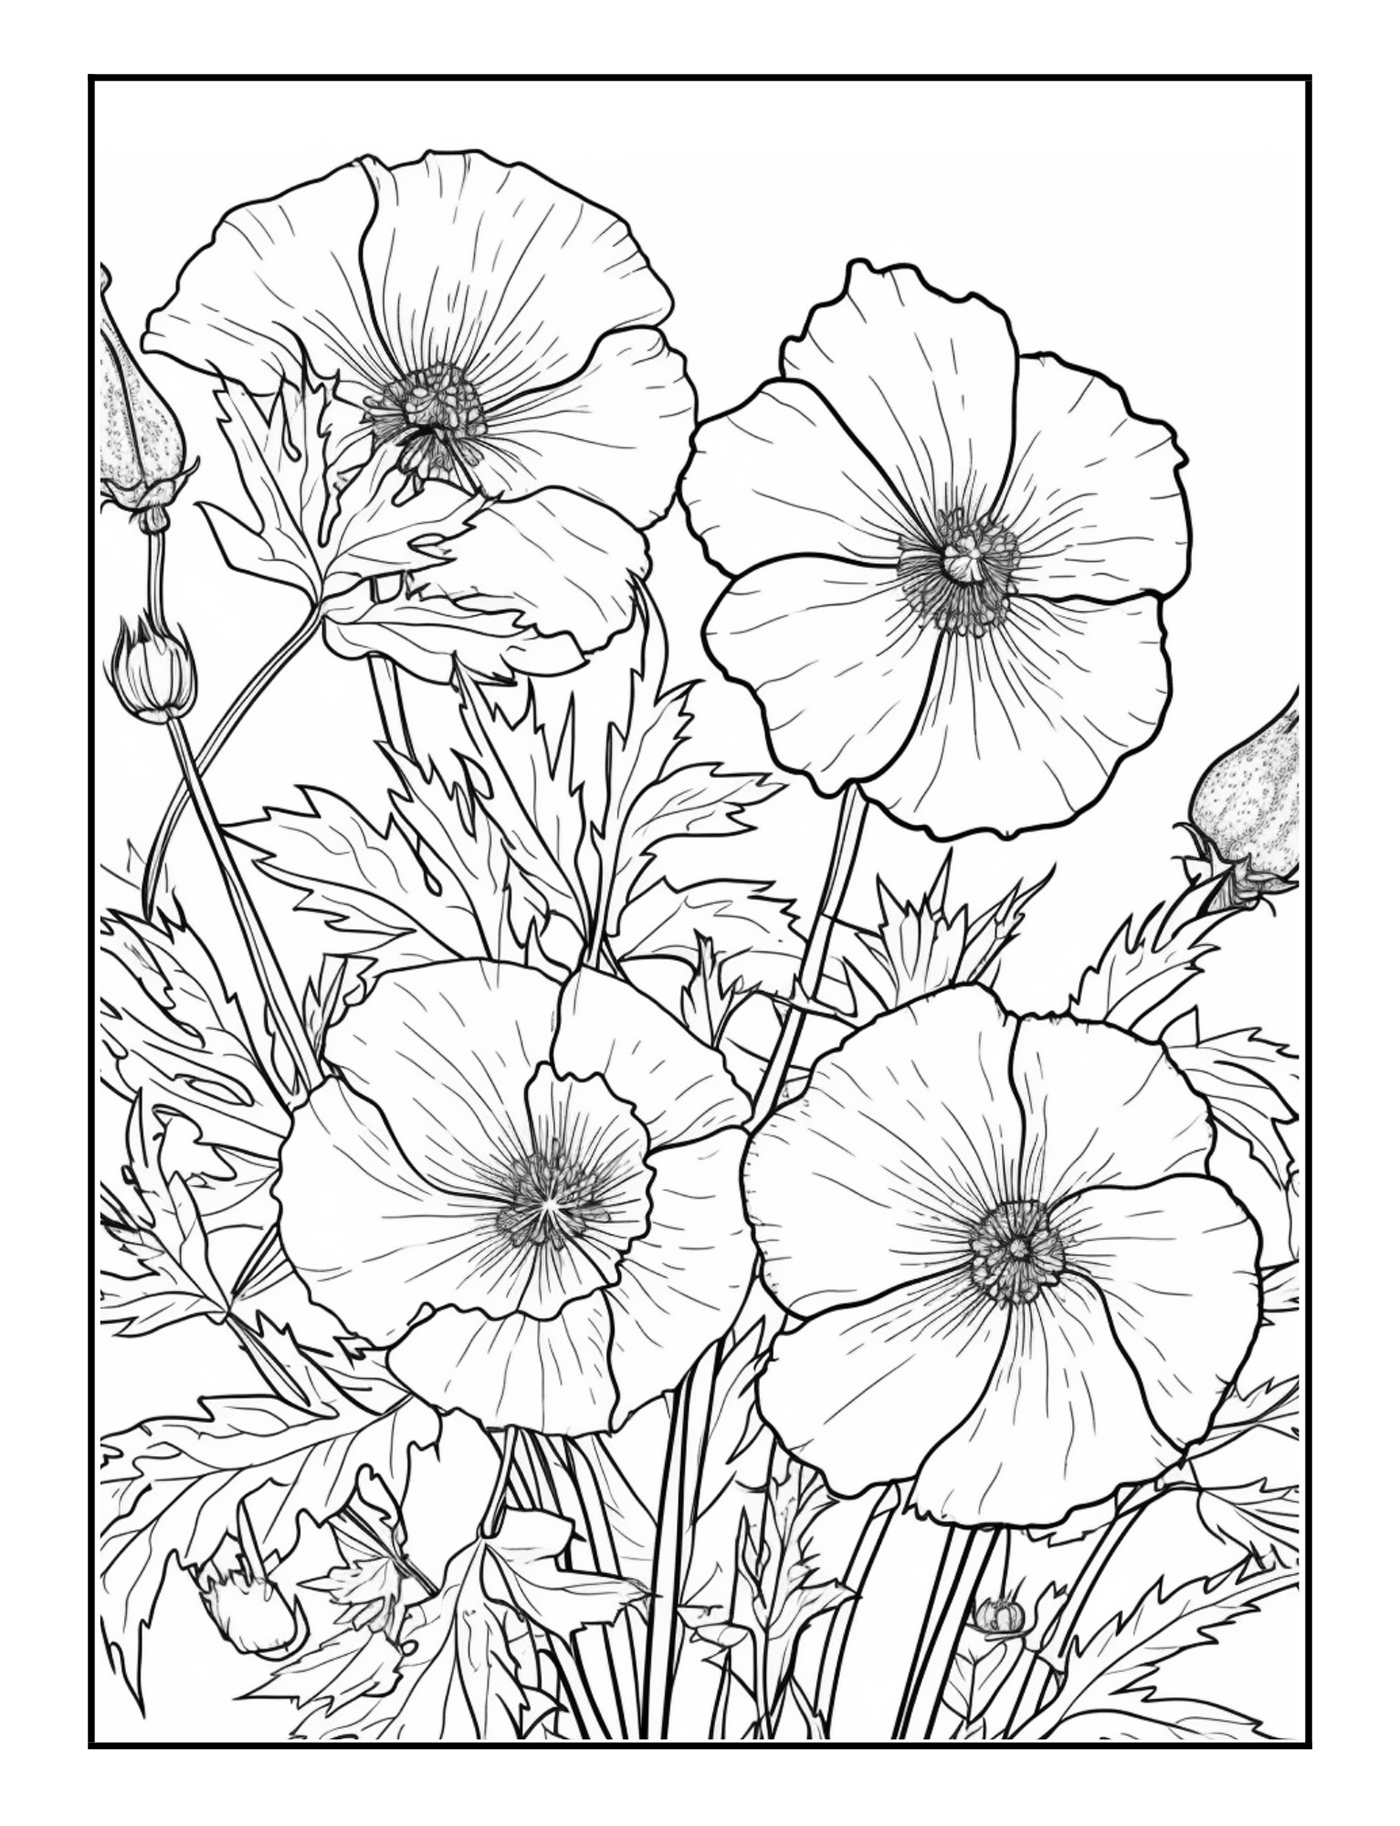 Drawing  Flower Illustration coloring book kdp Book Cover Design publishing   book design floral